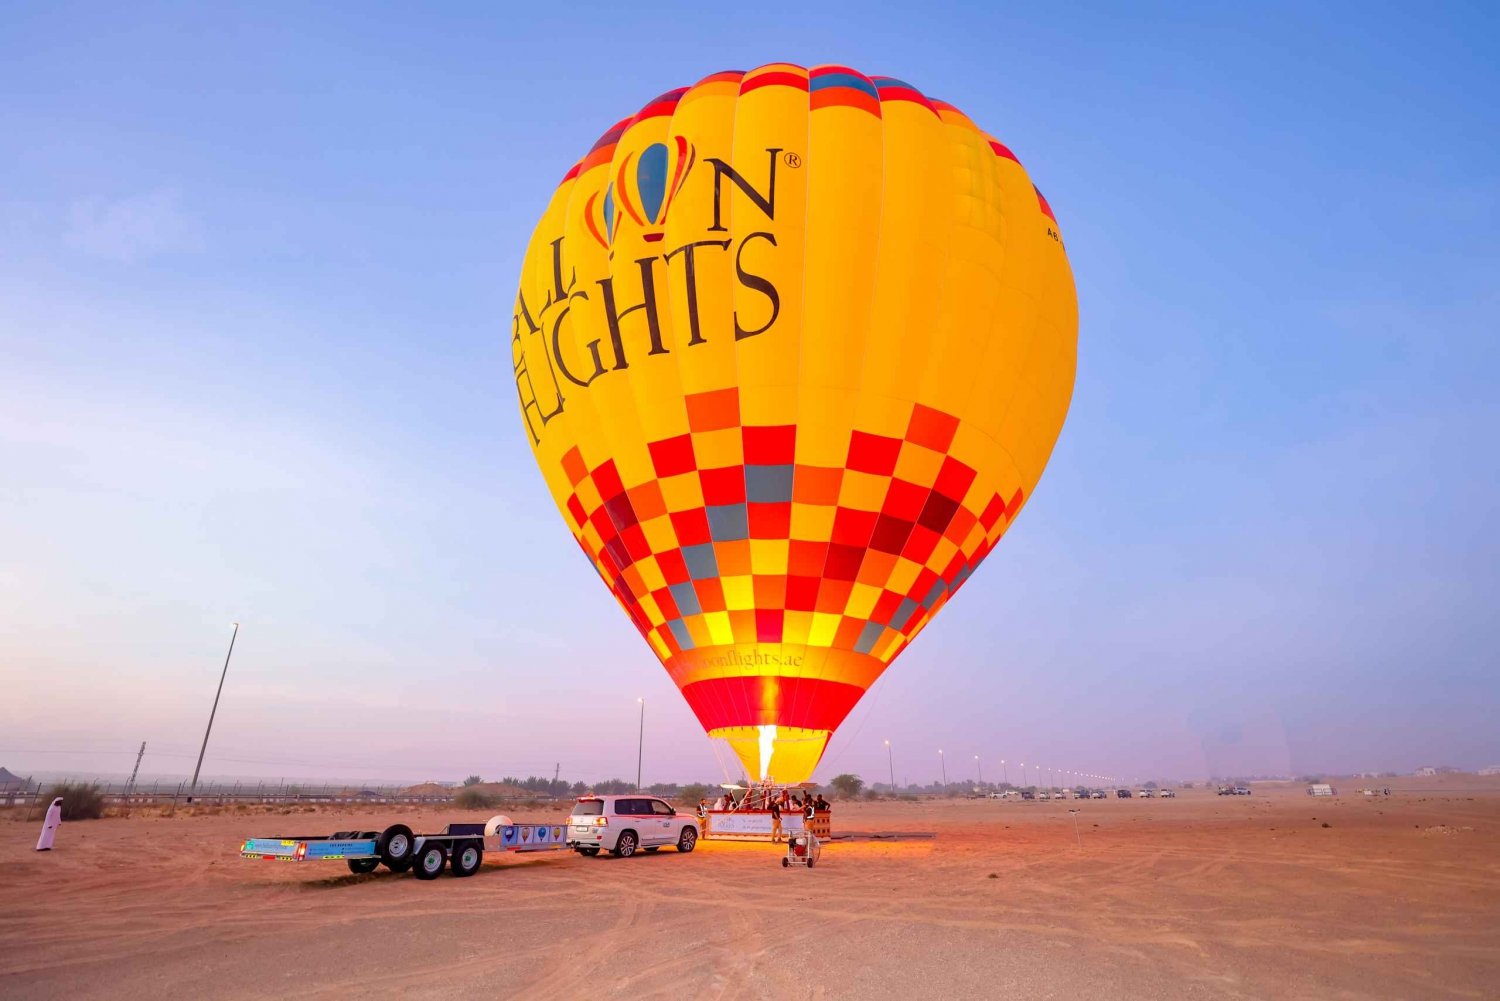 Dubai: Sunrise Hot Air Balloon Trip with Buffet Breakfast